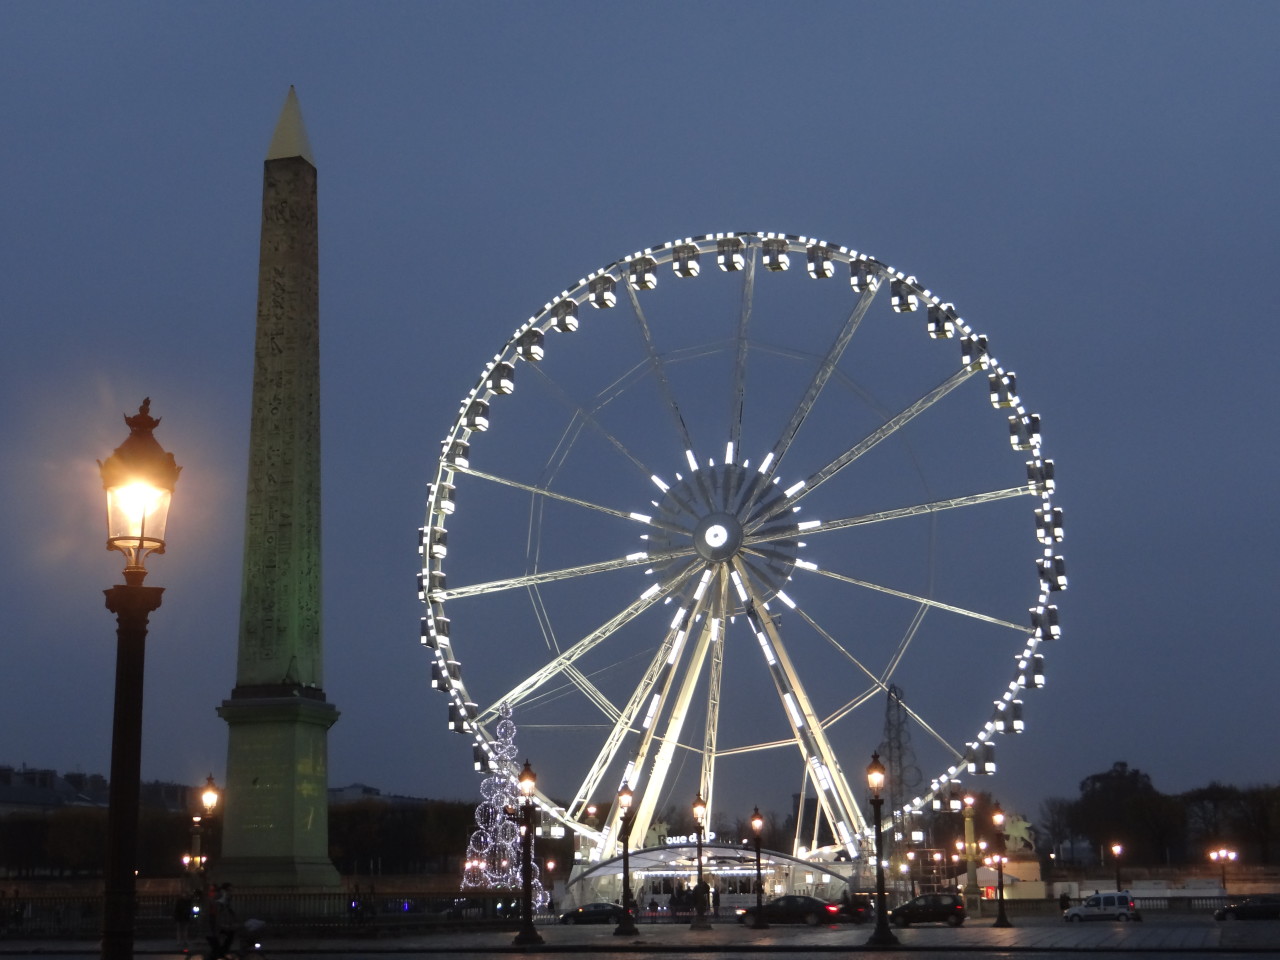 Place de la Concorde and Roue de Paris at night